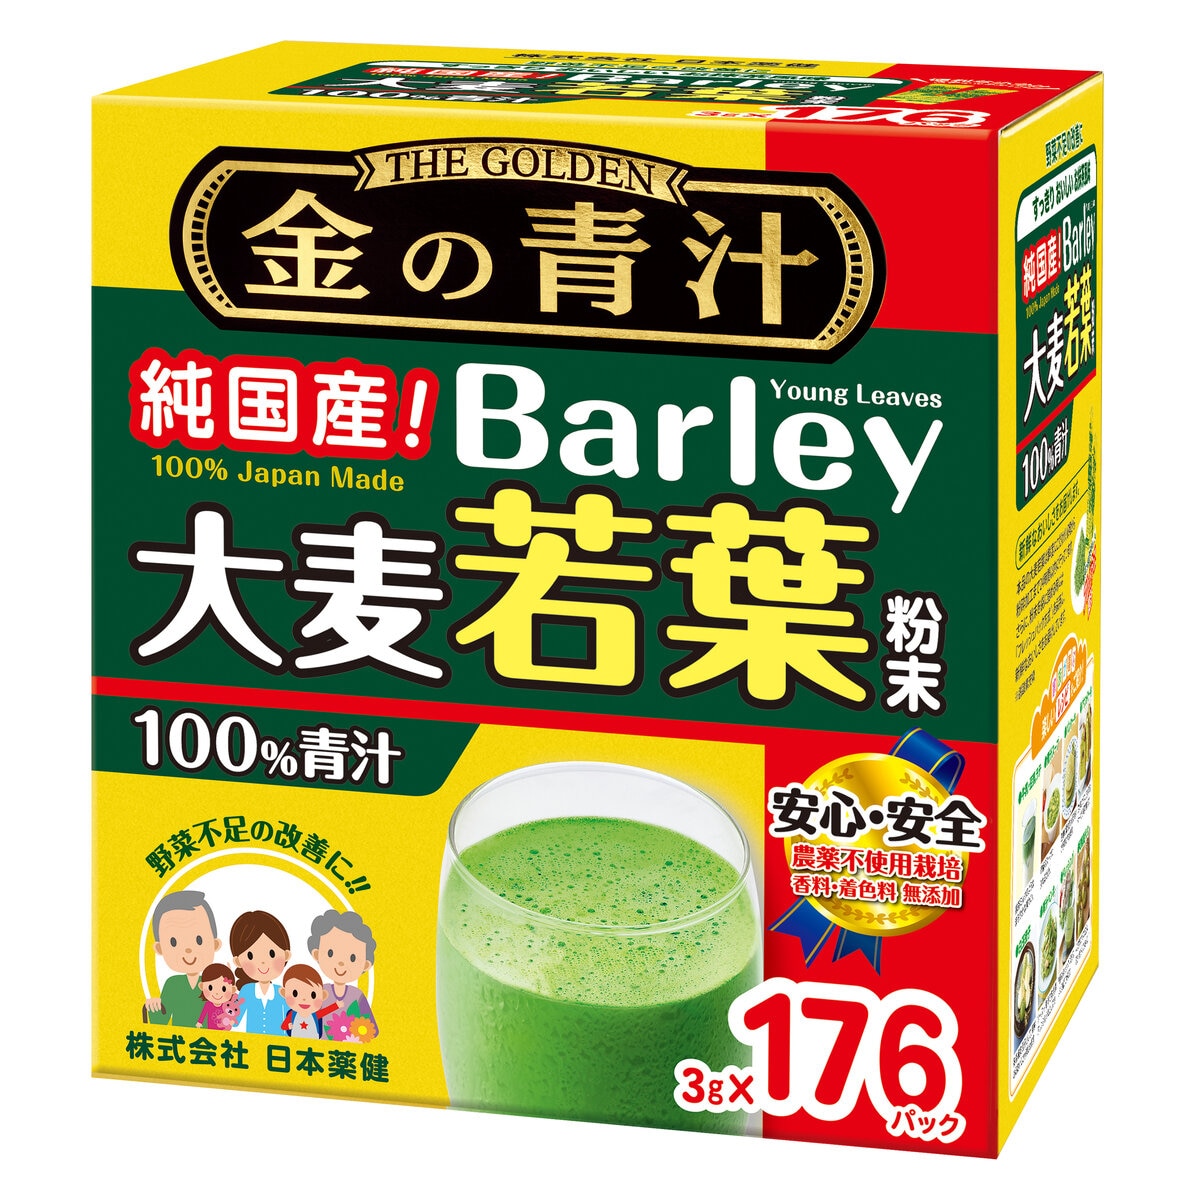 Barley Green Powder 3g x 176 Count